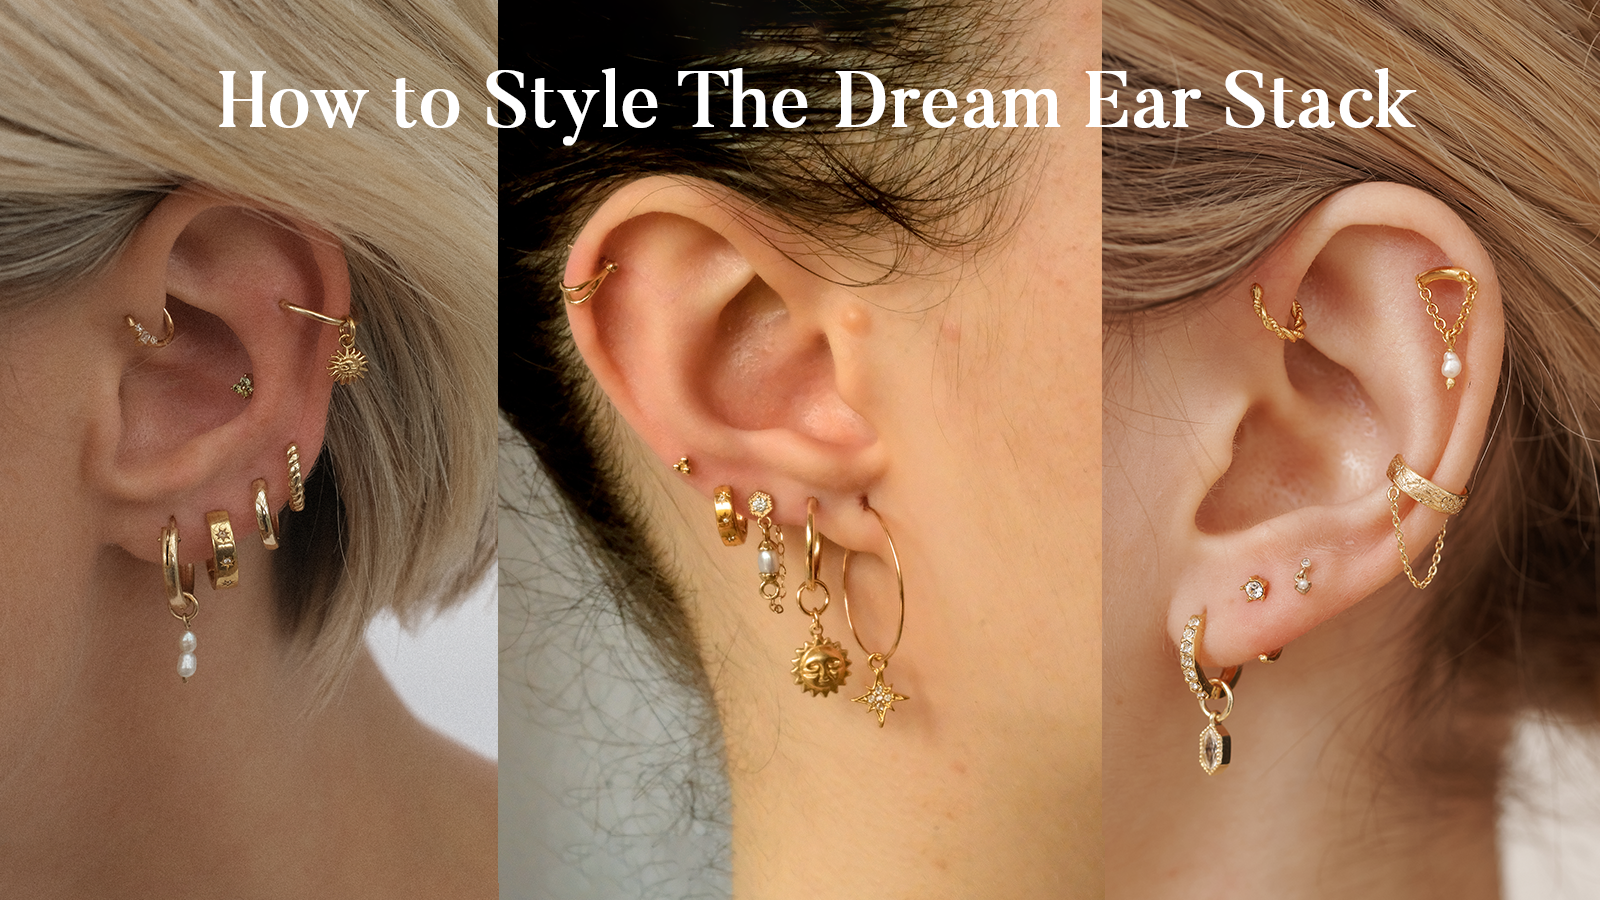 stacking ear piercings